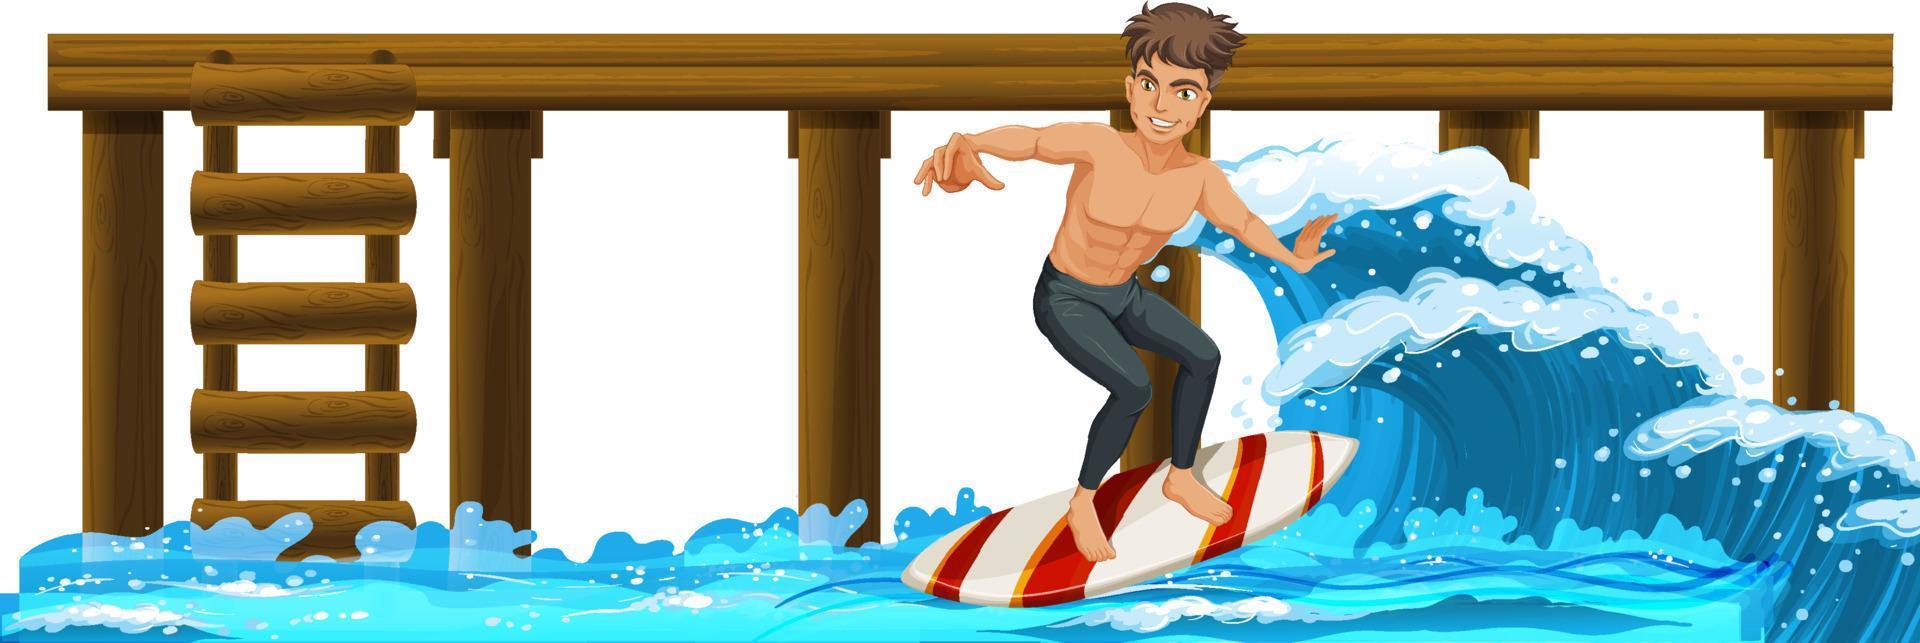 muelle de madera con un hombre en tabla de surf vector